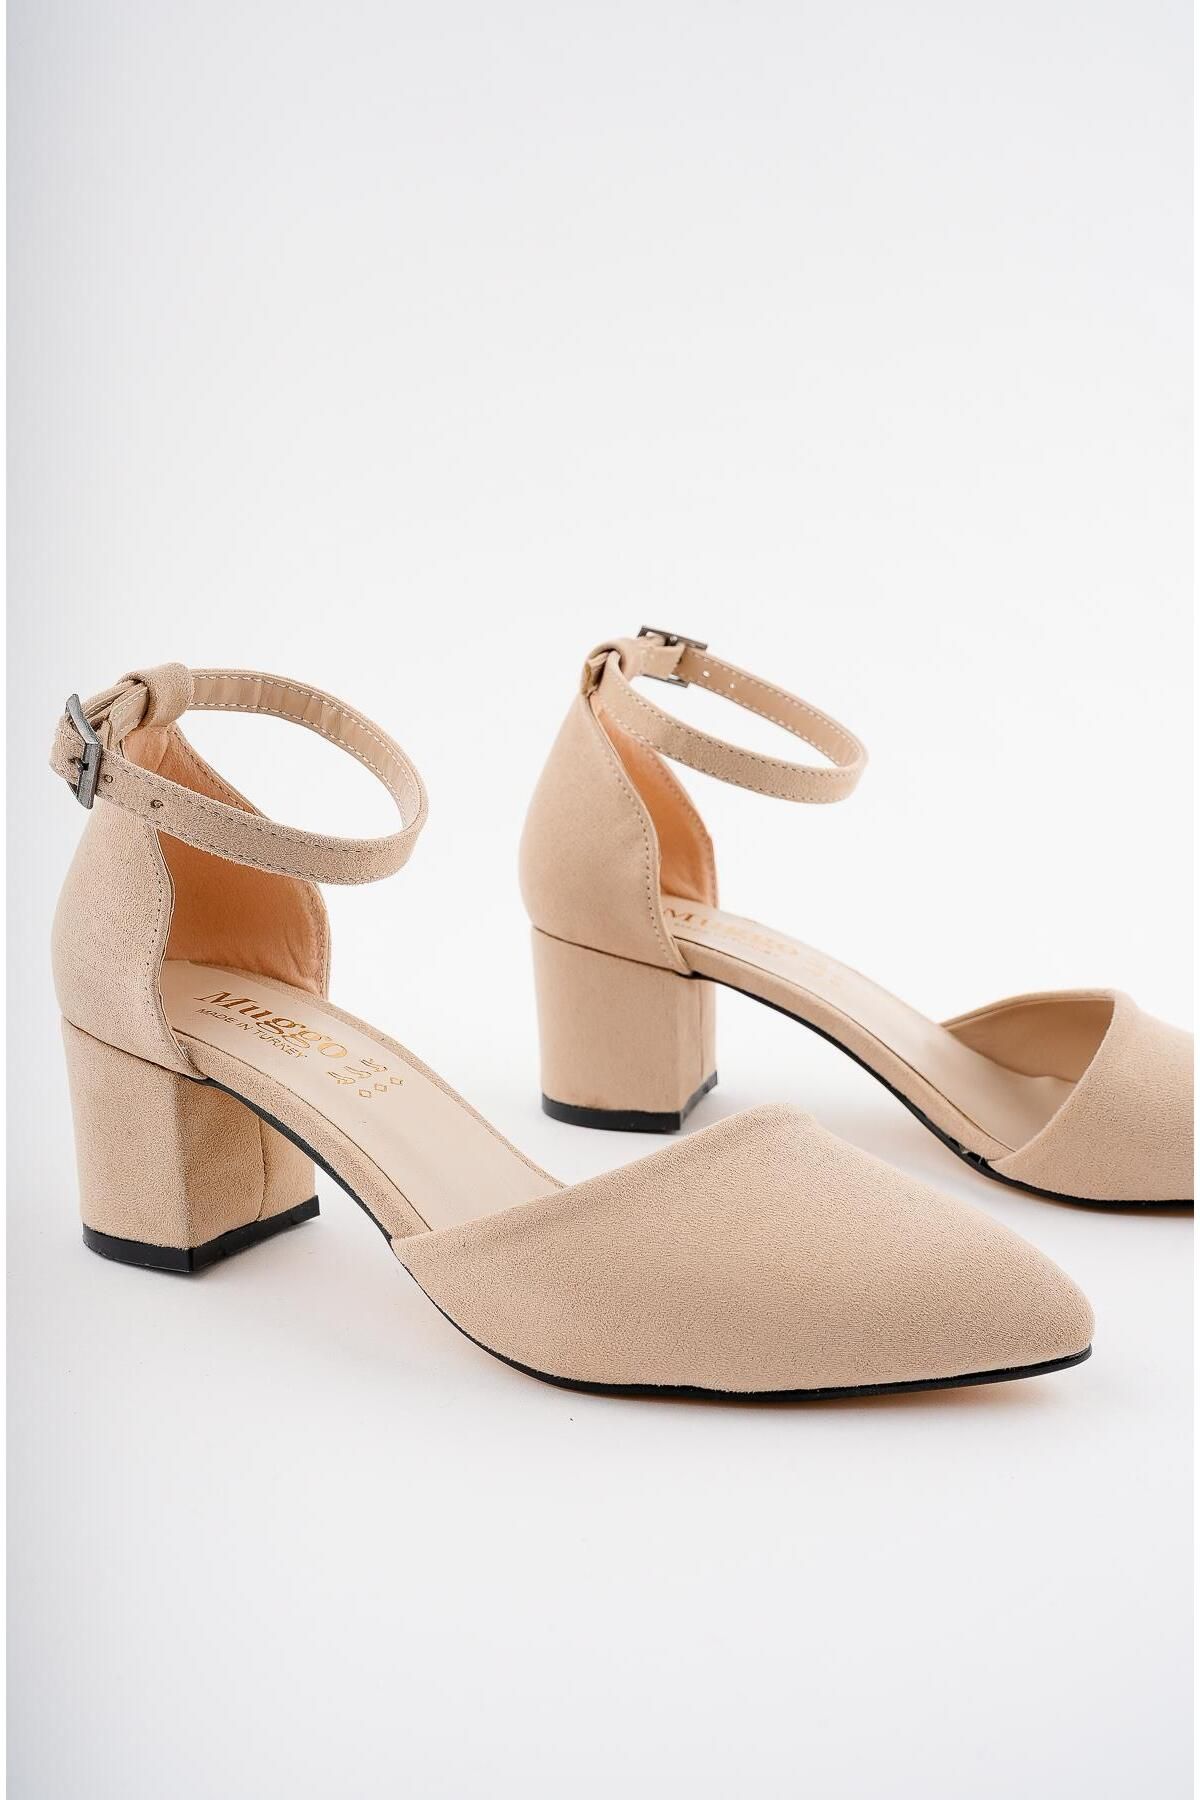 Muggo W0708 Garantili Kadın Klasik Günlük Tarz Şık Ve Rahat Topuklu Ayakkabı